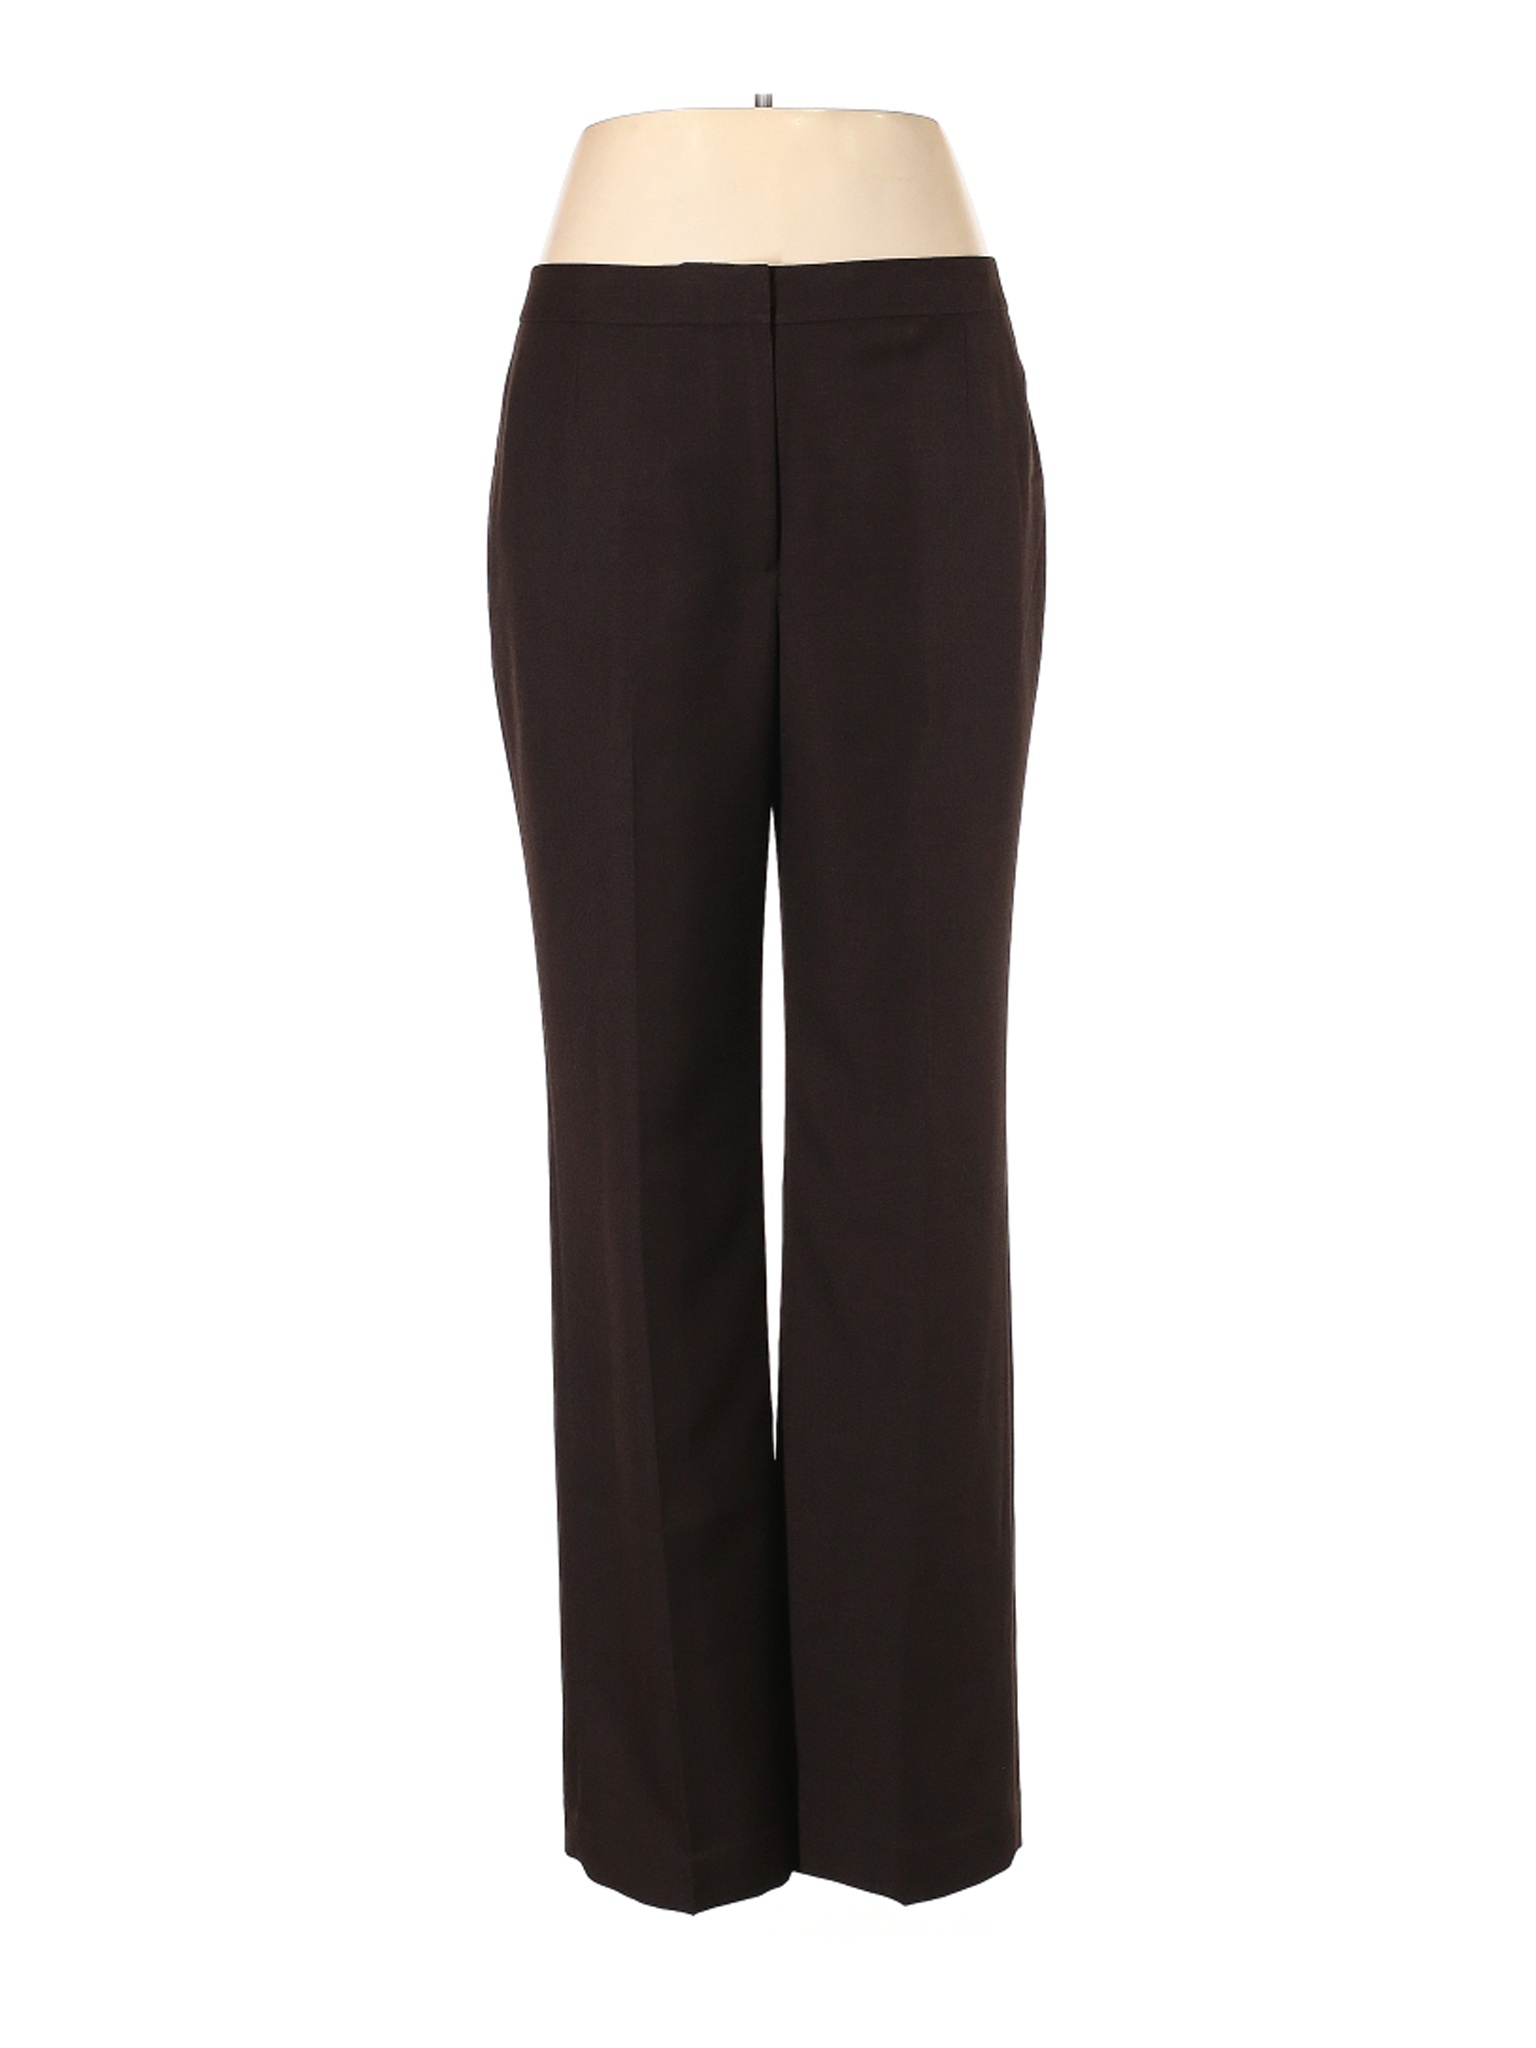 Kasper Women Brown Dress Pants 12 | eBay